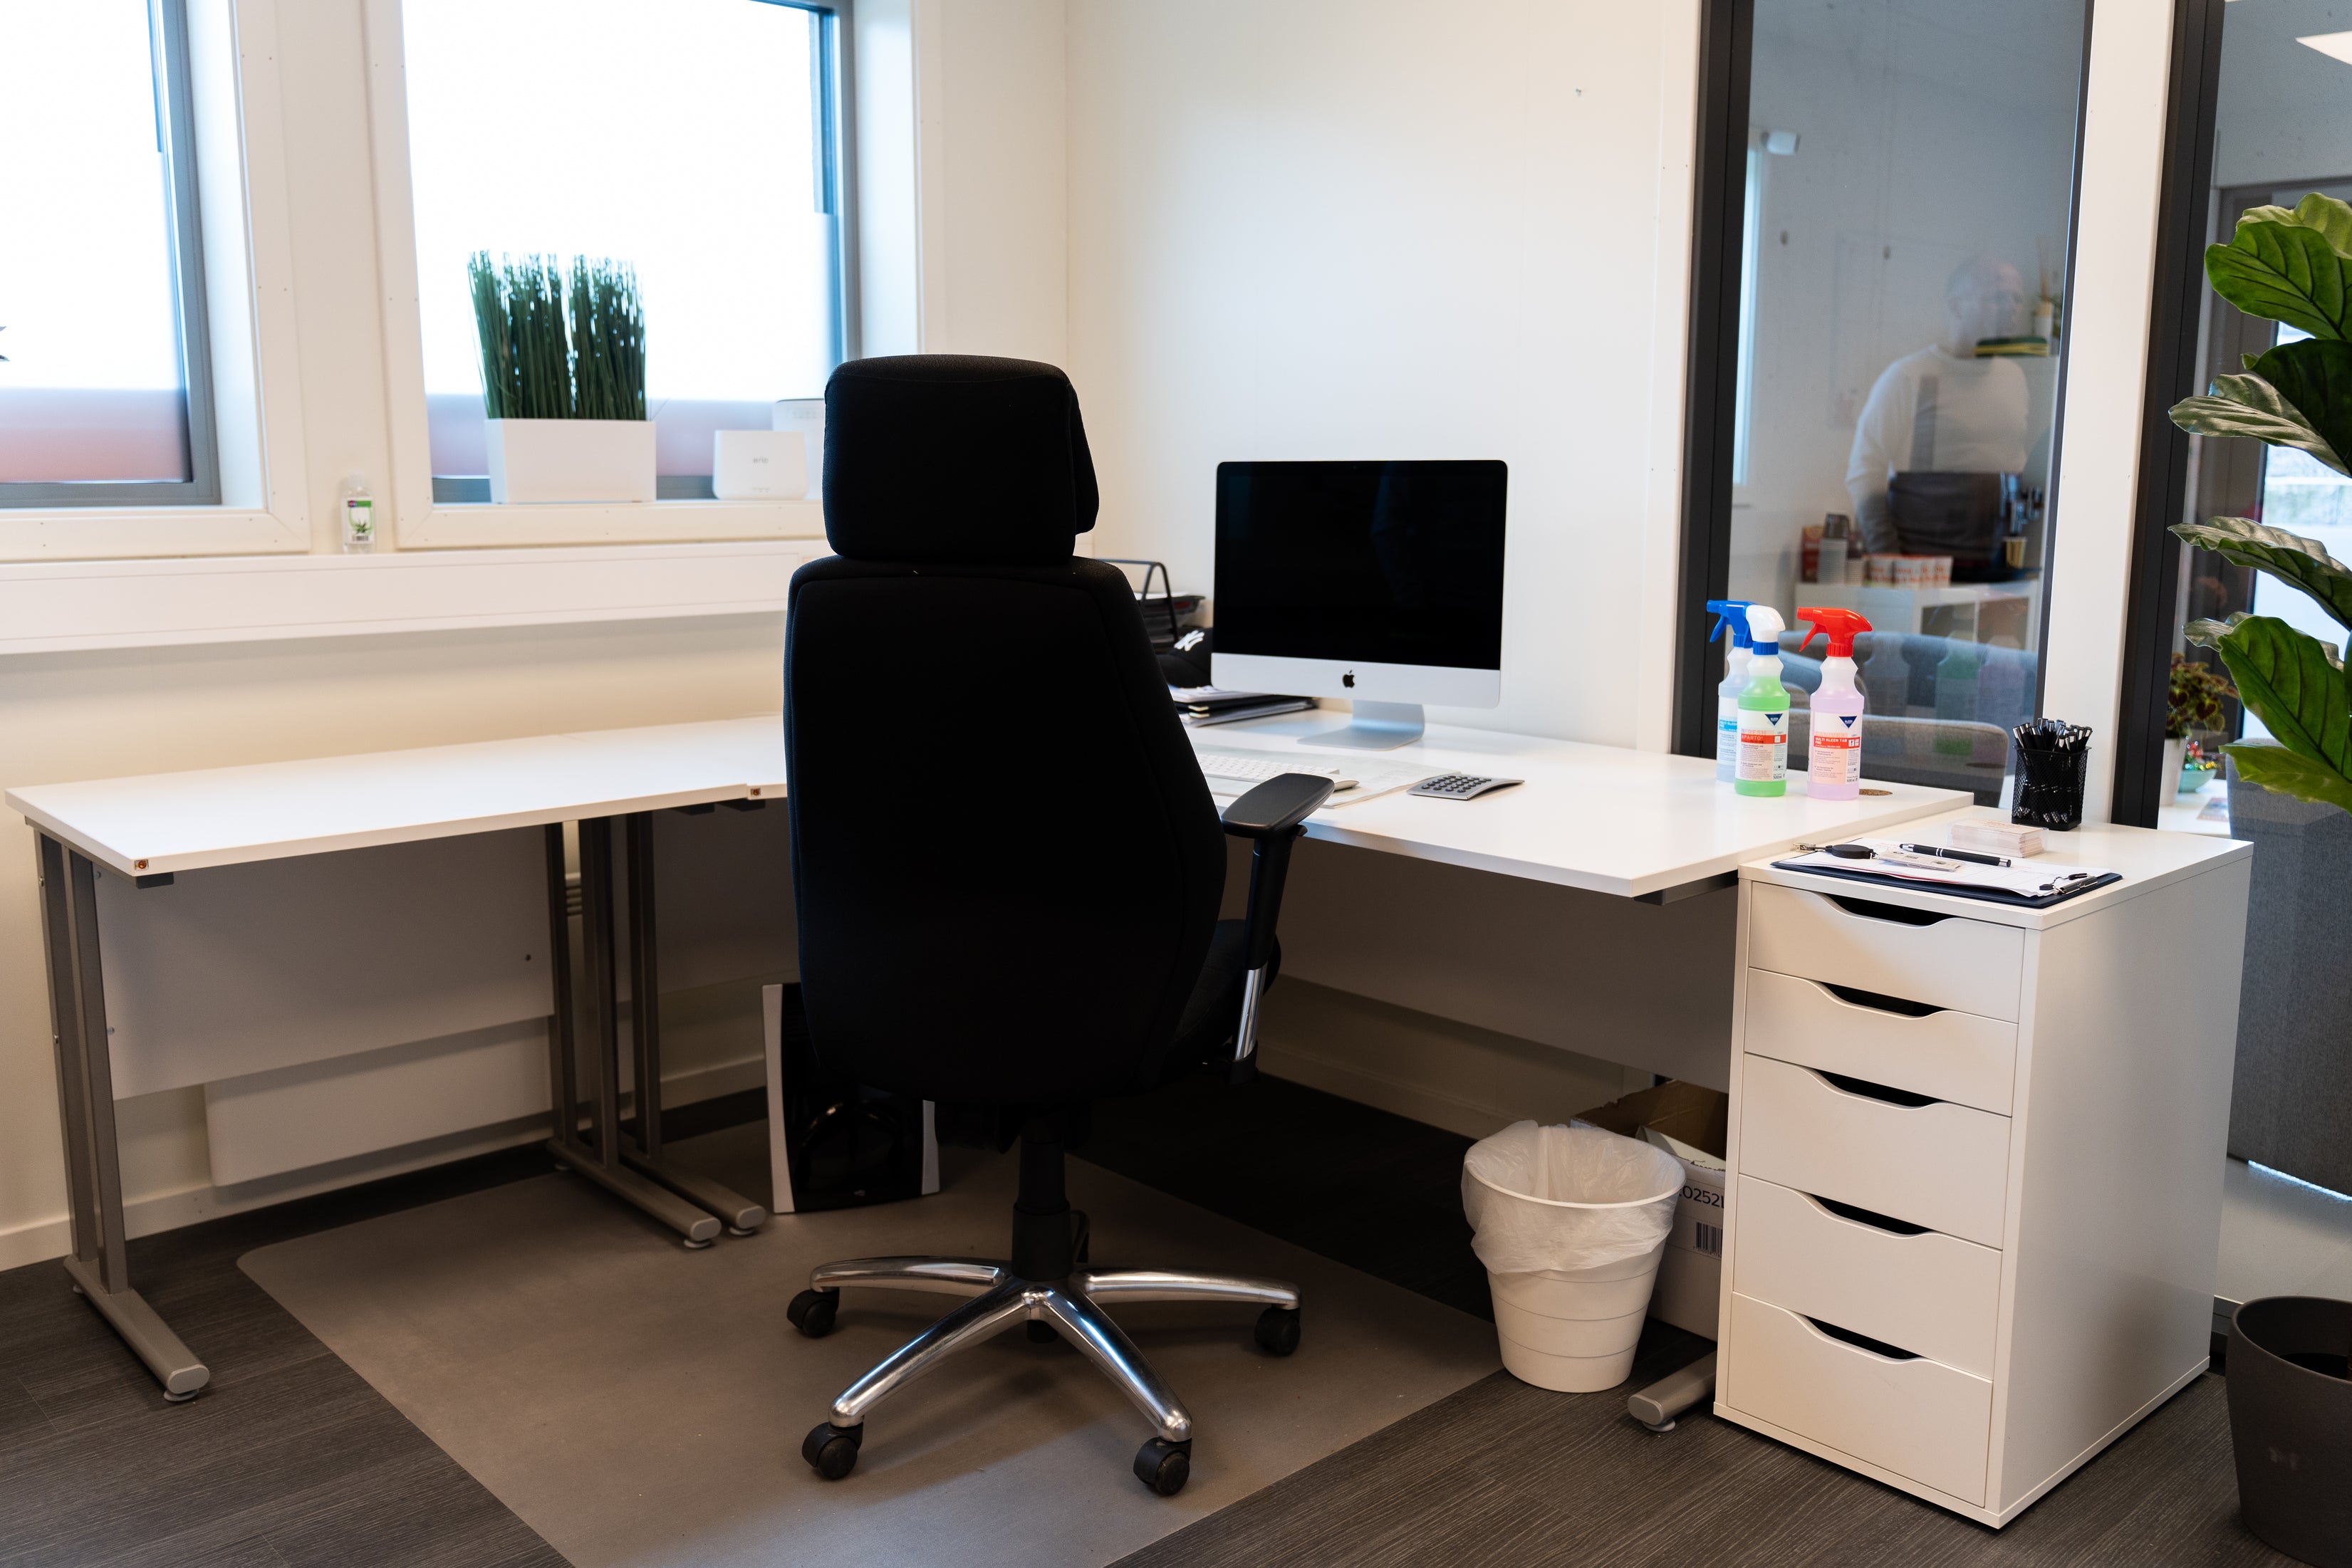 En moderne kontorplass designet for Fast renhold hos bedrifter har en svart kontorstol, et hvitt skrivebord med en dataskjerm, rensemiddel og papirarbeid. En liten søppelbøtte og oppbevaringsenhet er også synlig.